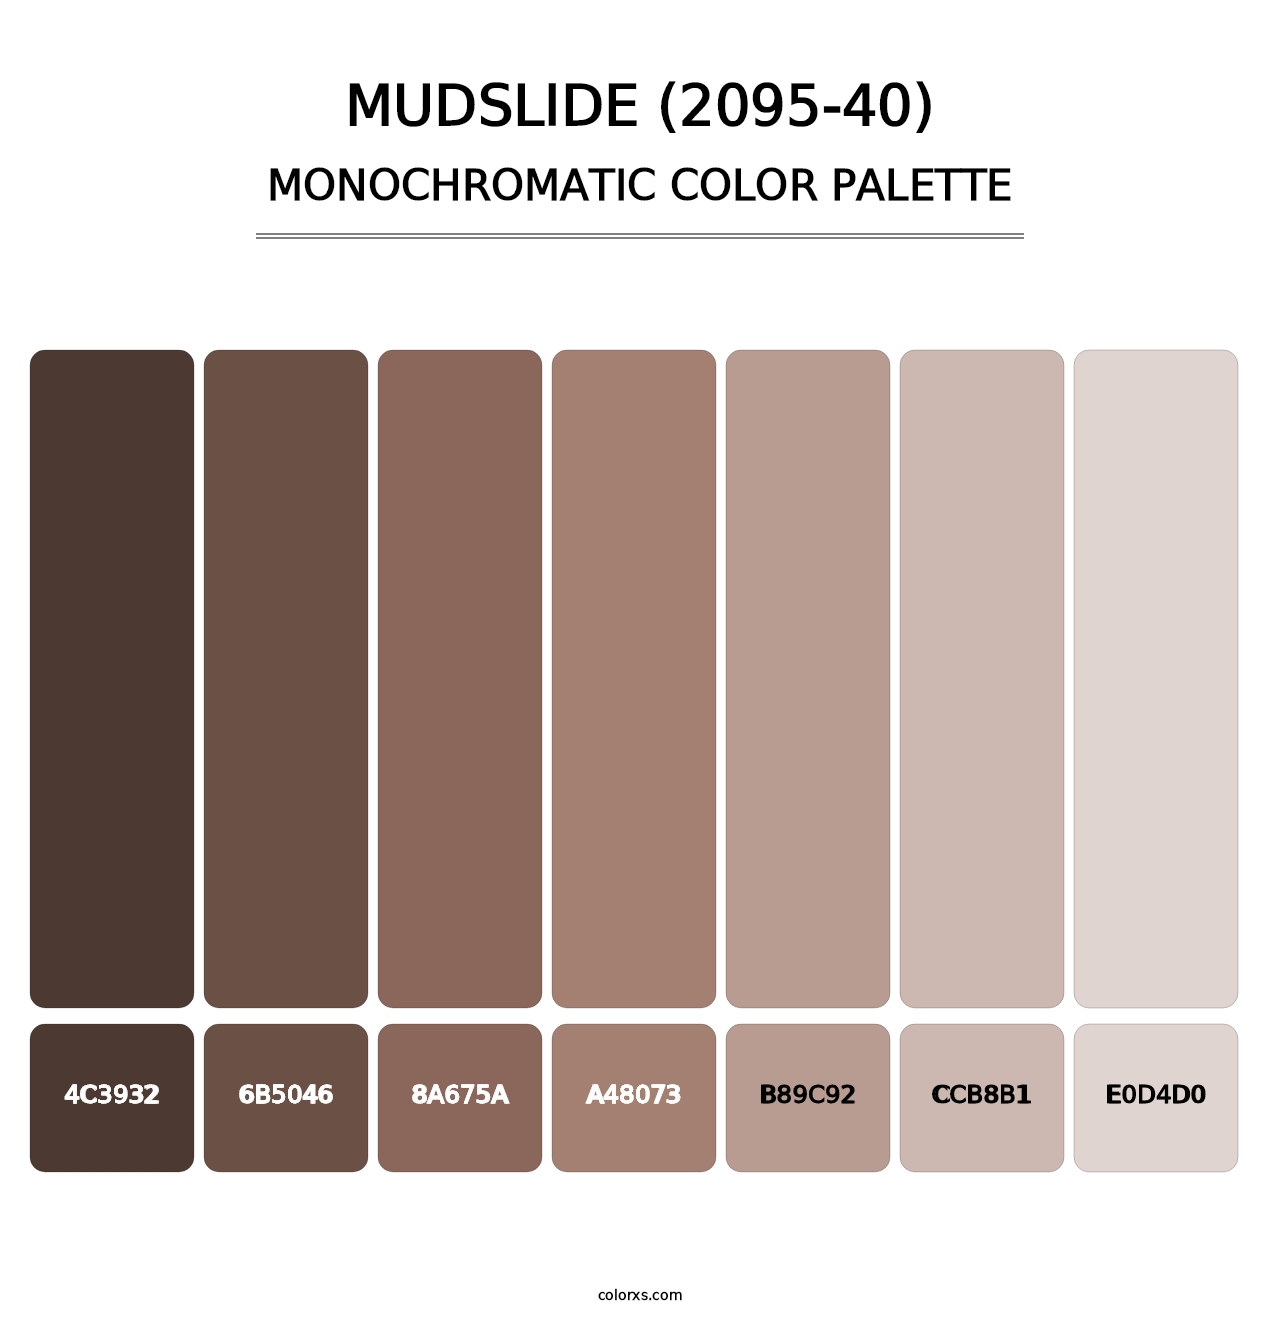 Mudslide (2095-40) - Monochromatic Color Palette